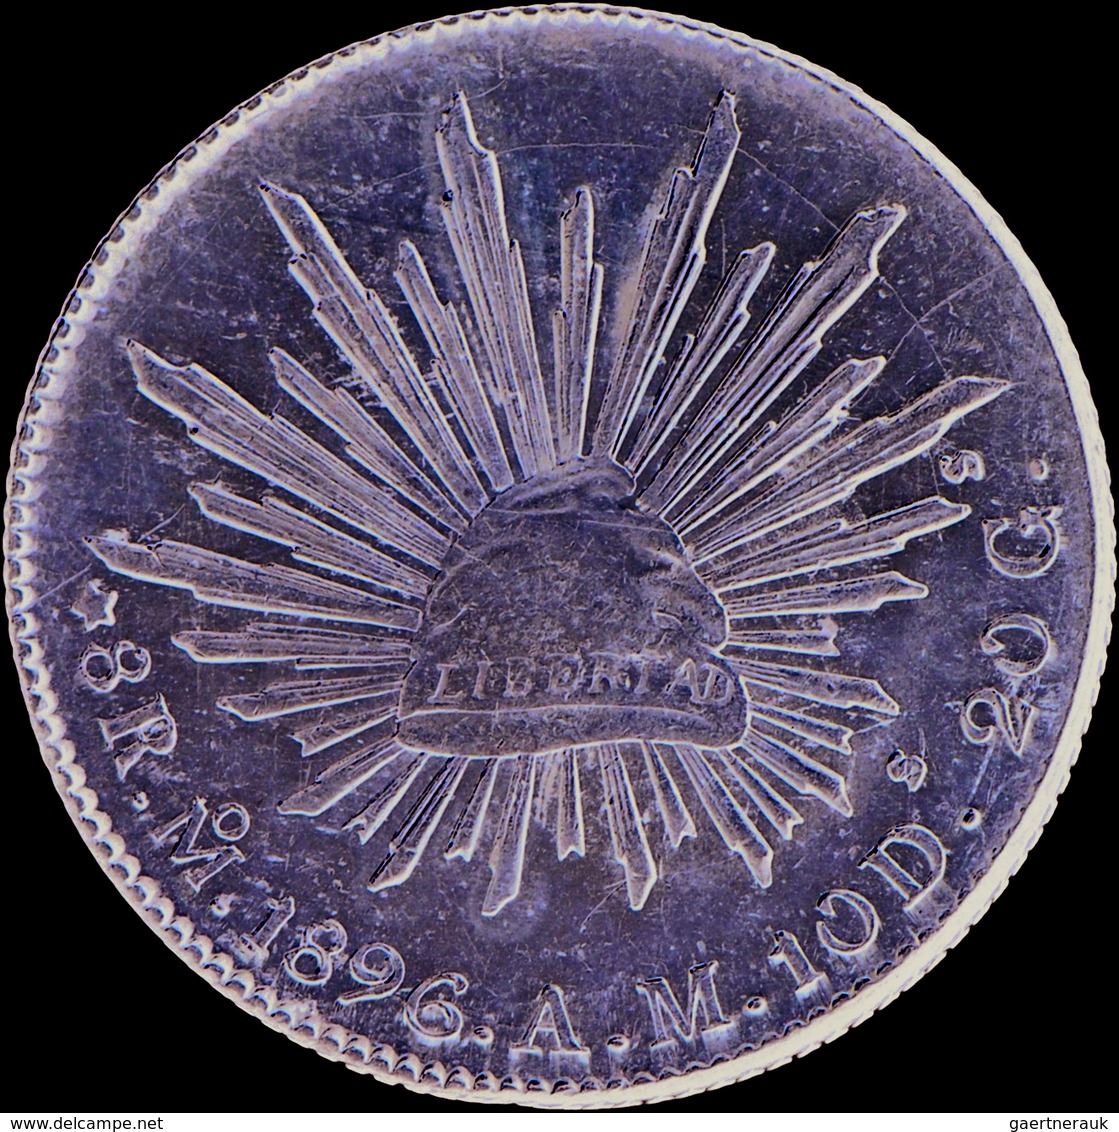 Mexiko: 8 Reales 1896 Mo - AM, Mexico City Mint, KM # 377.10, 27.08 G, Vorzüglich. - Mexique